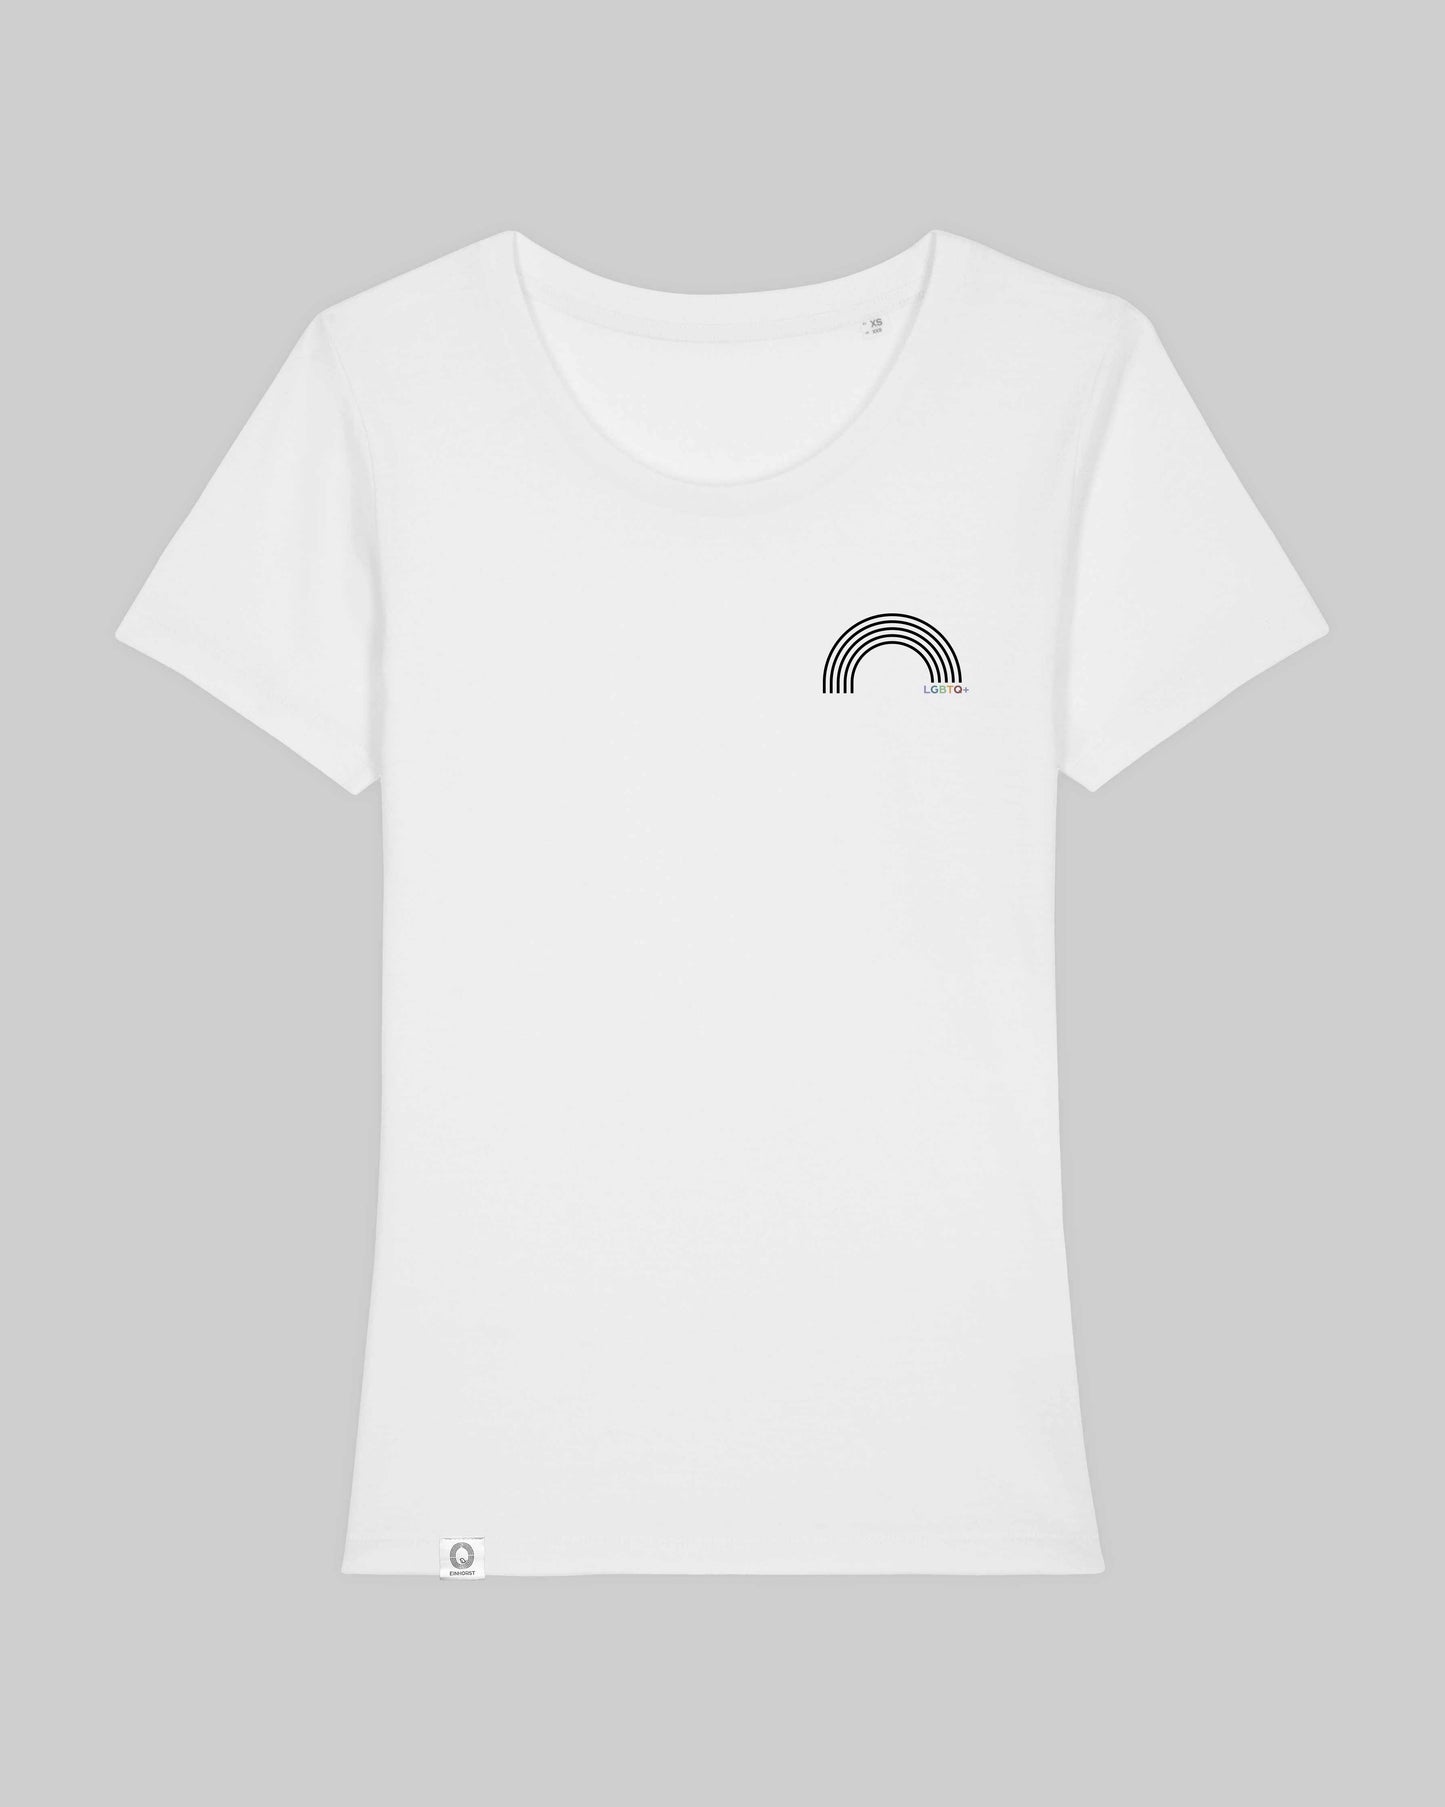 EINHORST® Organic Shirt tailliert in "Weiß" mit dem Motiv "lgbtq+ Regenbogen" in der Kombination schwarzer Regenbogen mit bunter Schrift, Bild von Shirt von vorne